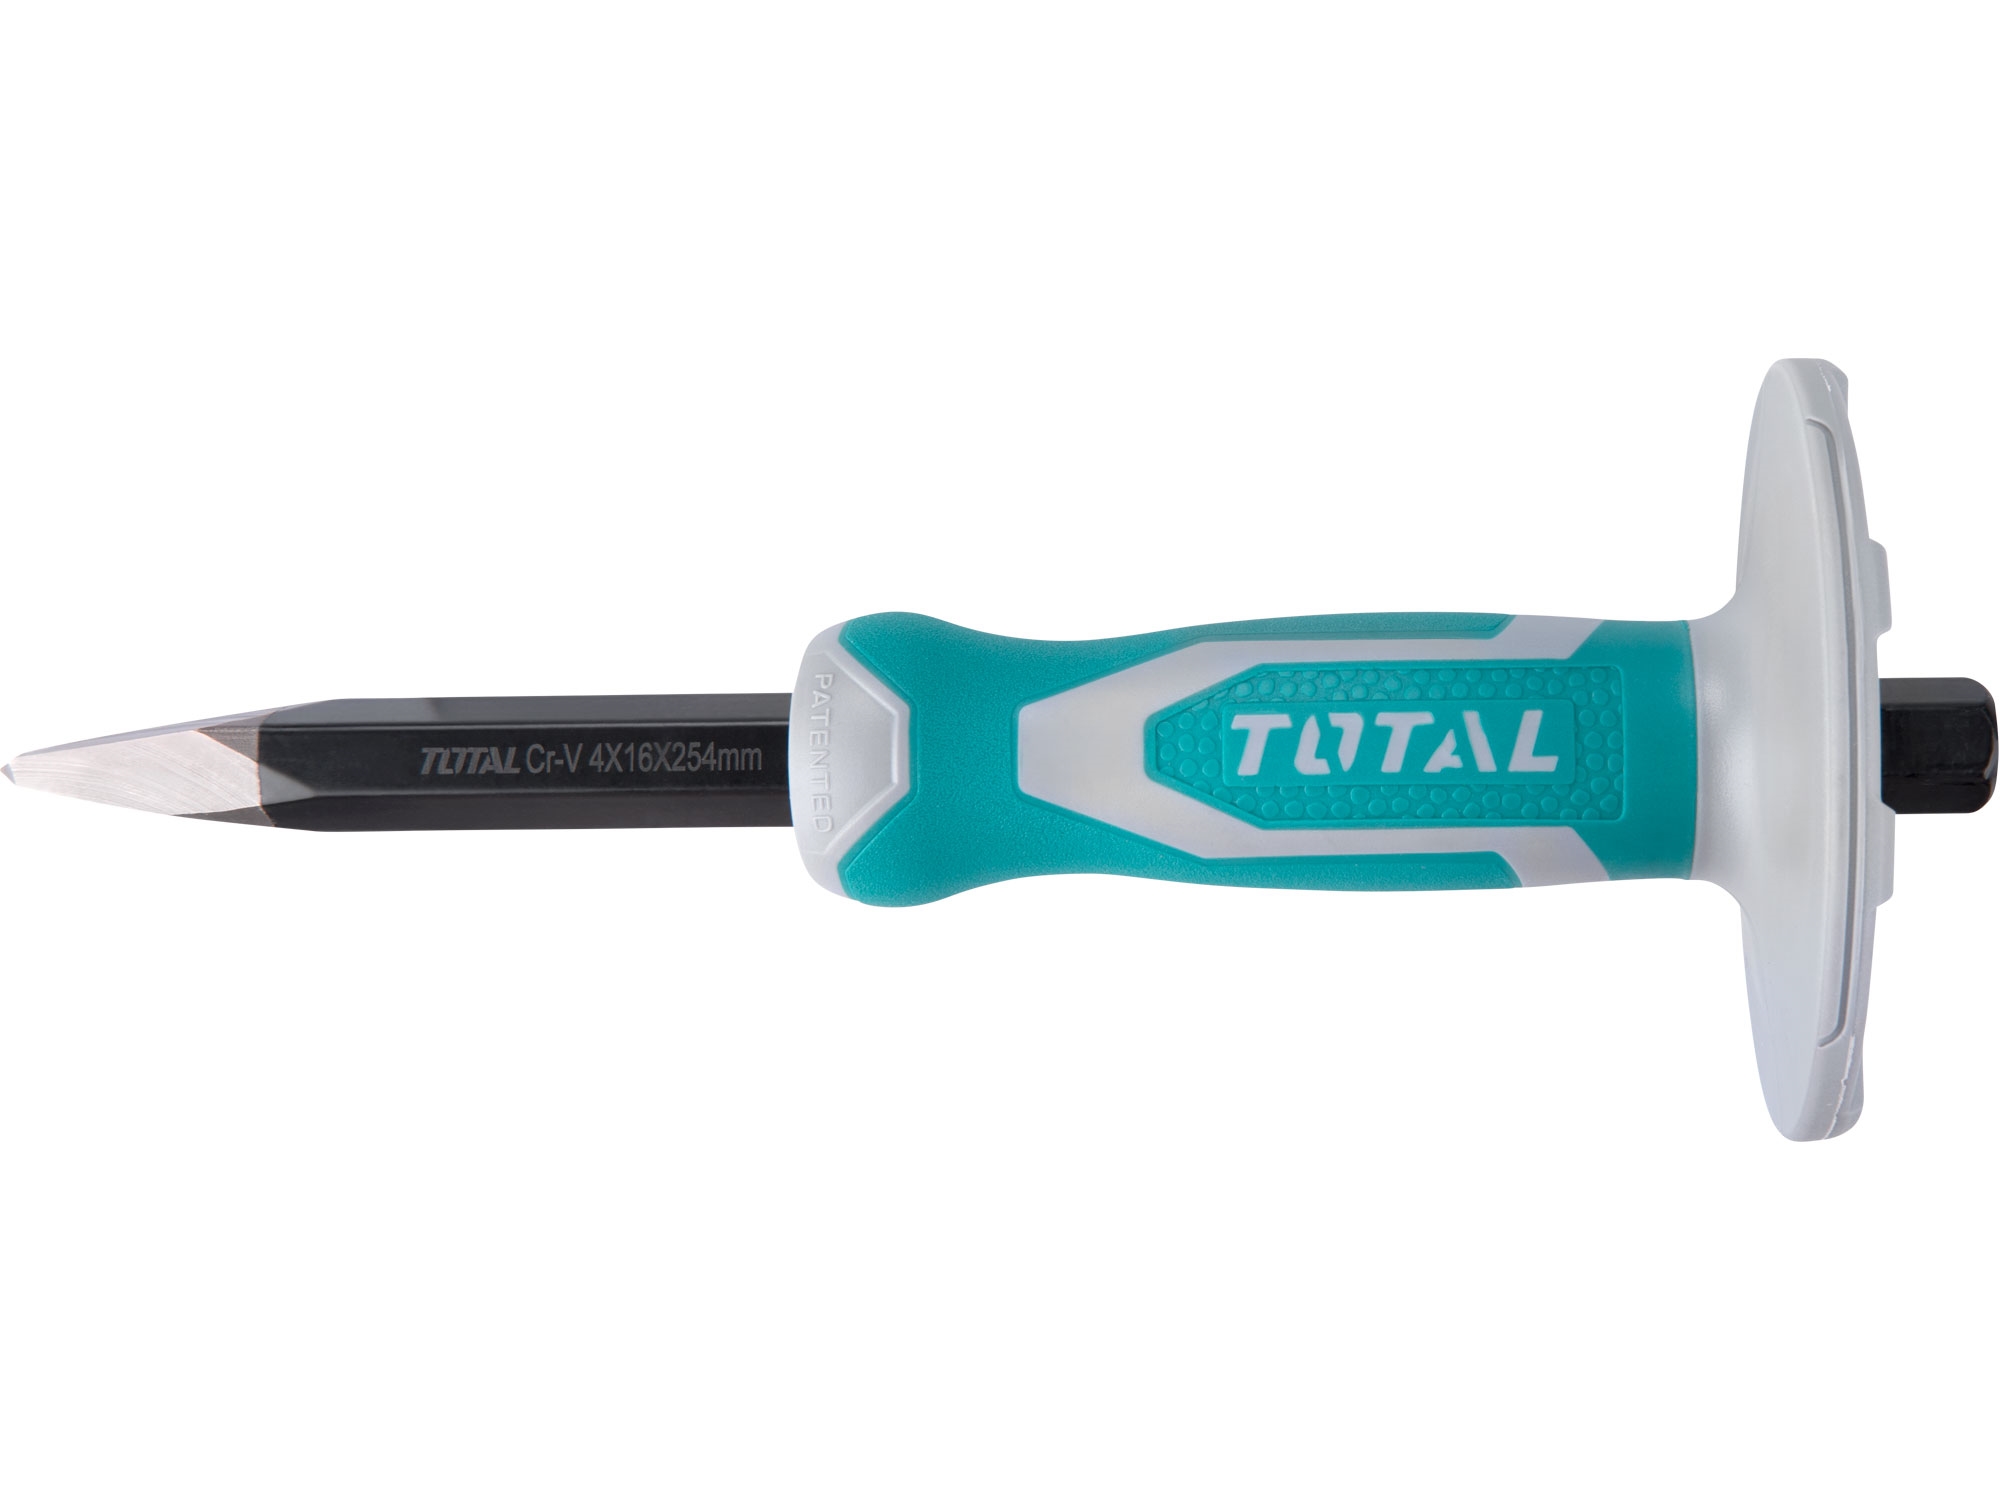 TOTAL THT4221016 sekáč špičatý s plastovým chráničem, industrial, šířka ostří 4mm, délka 254mm